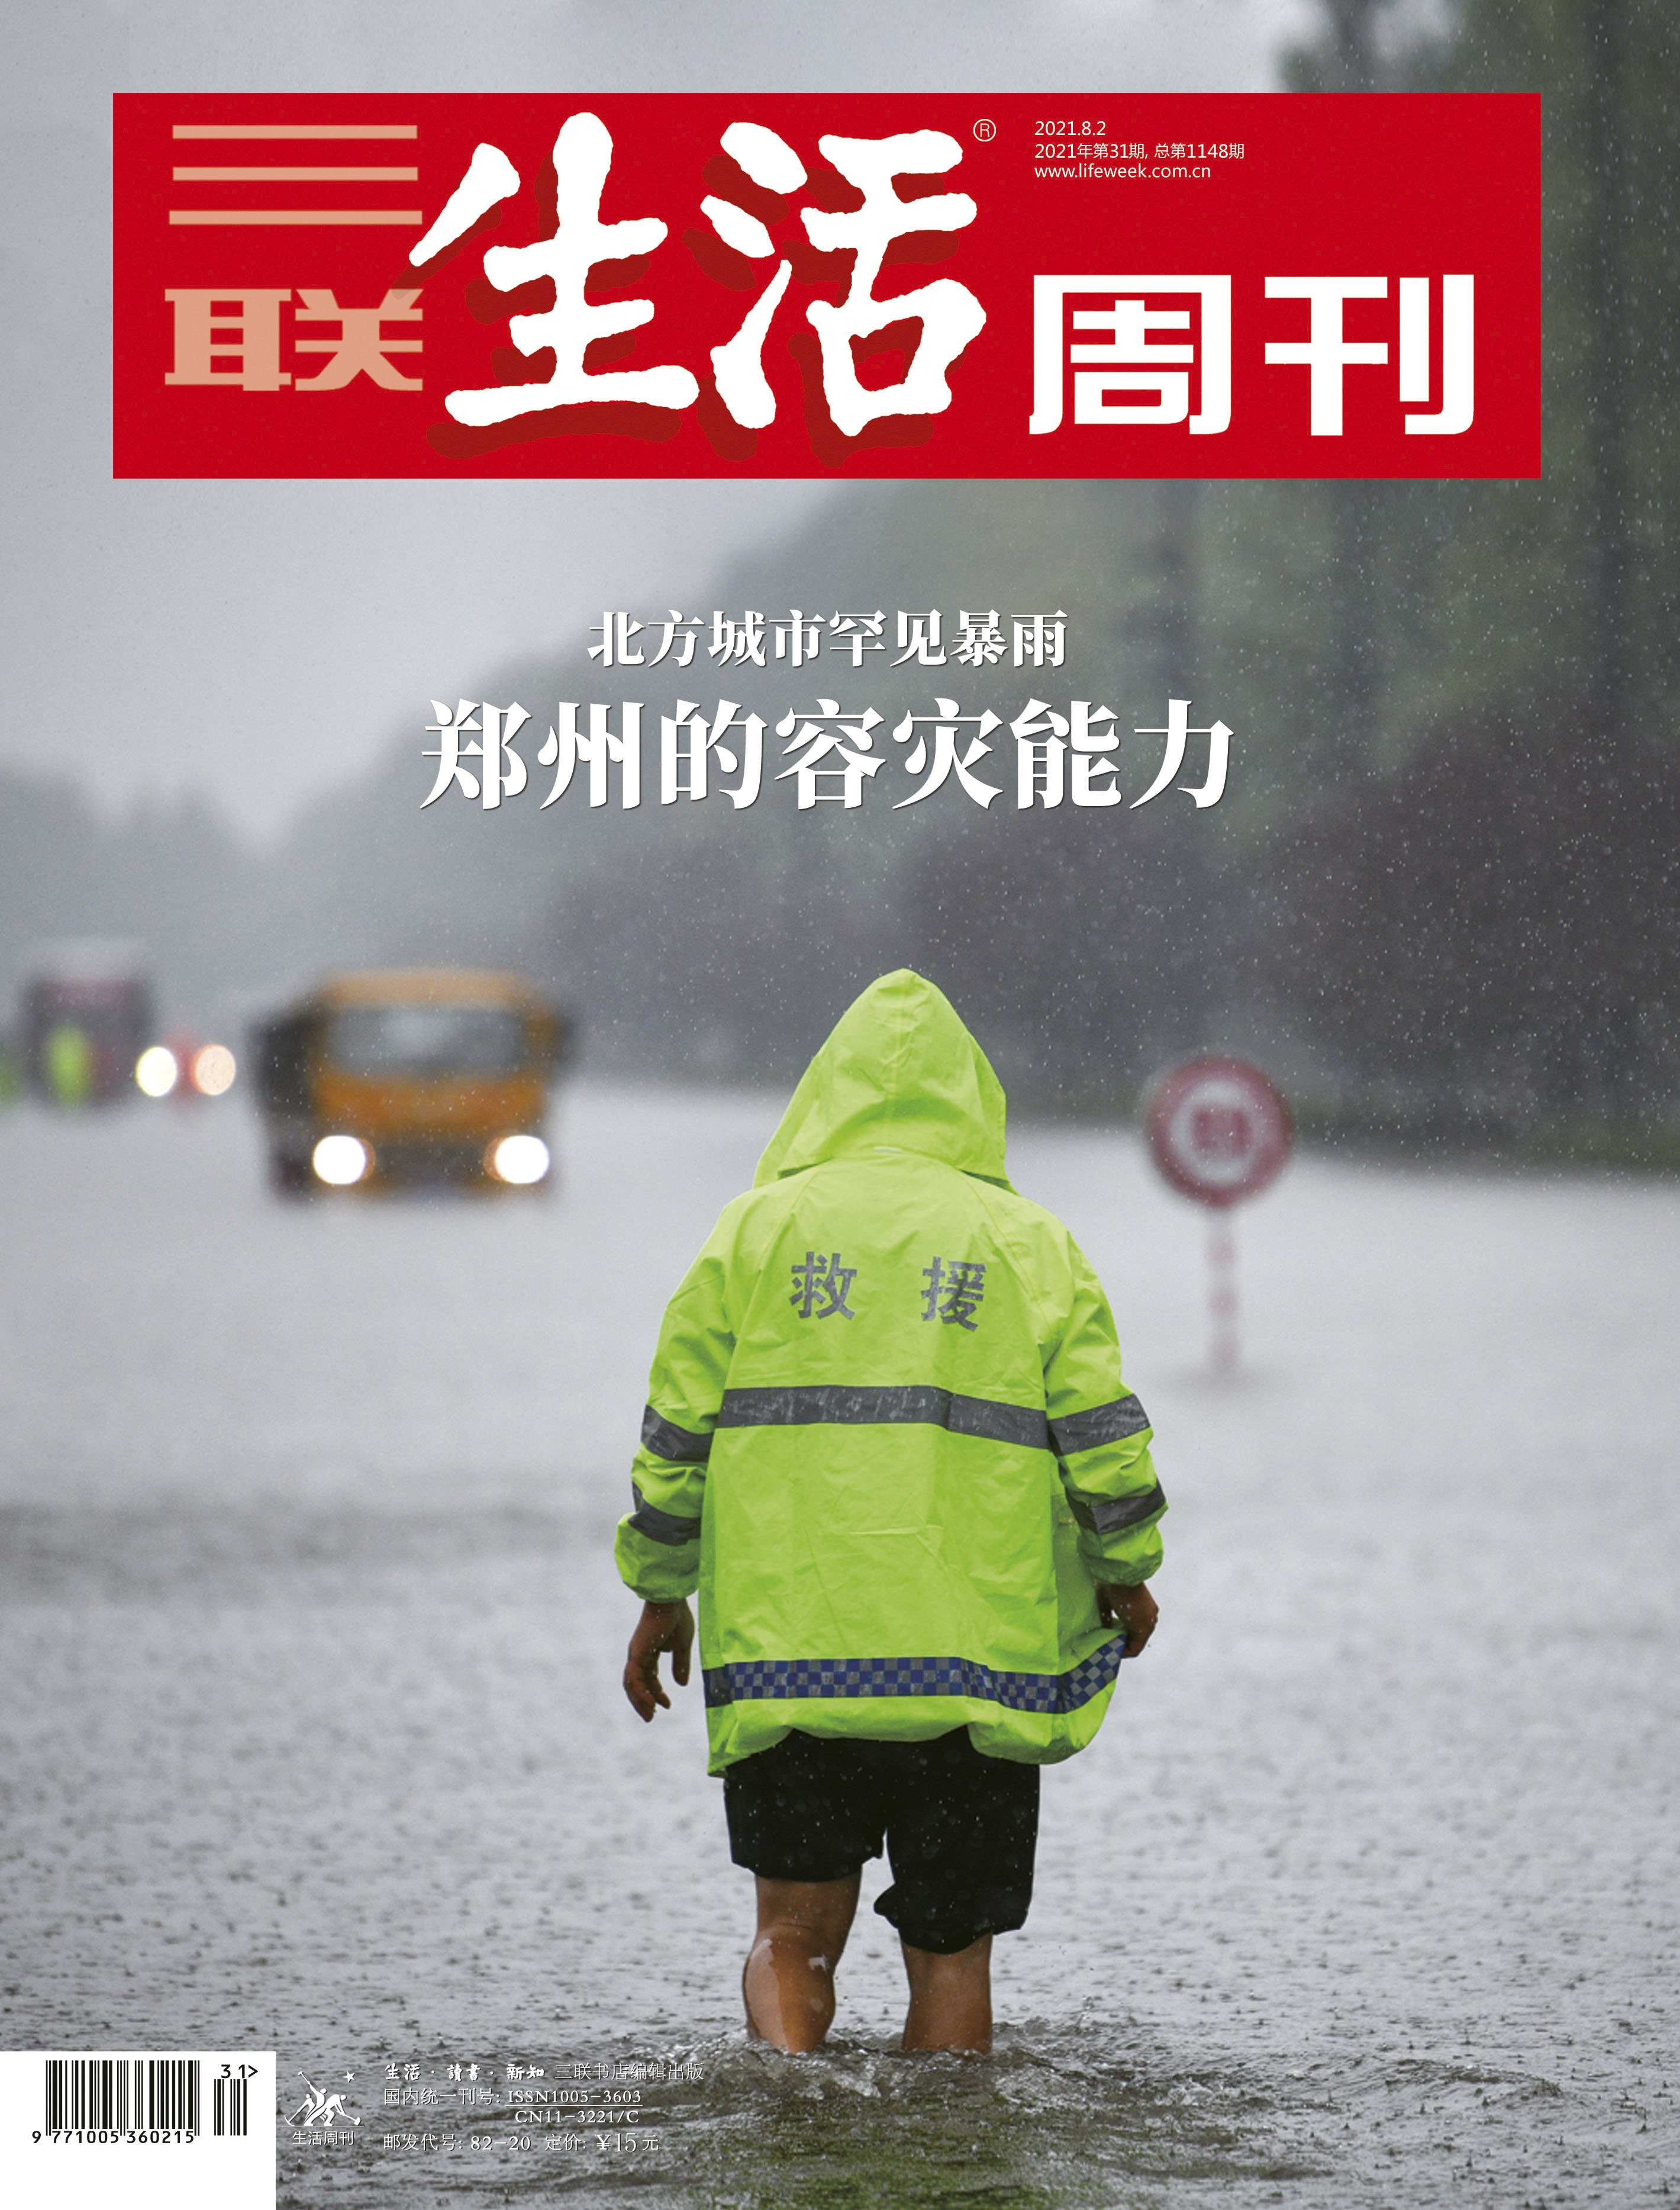 【三联生活周刊】2021年第31期1148 郑州的容灾能力 北方城市罕见暴雨